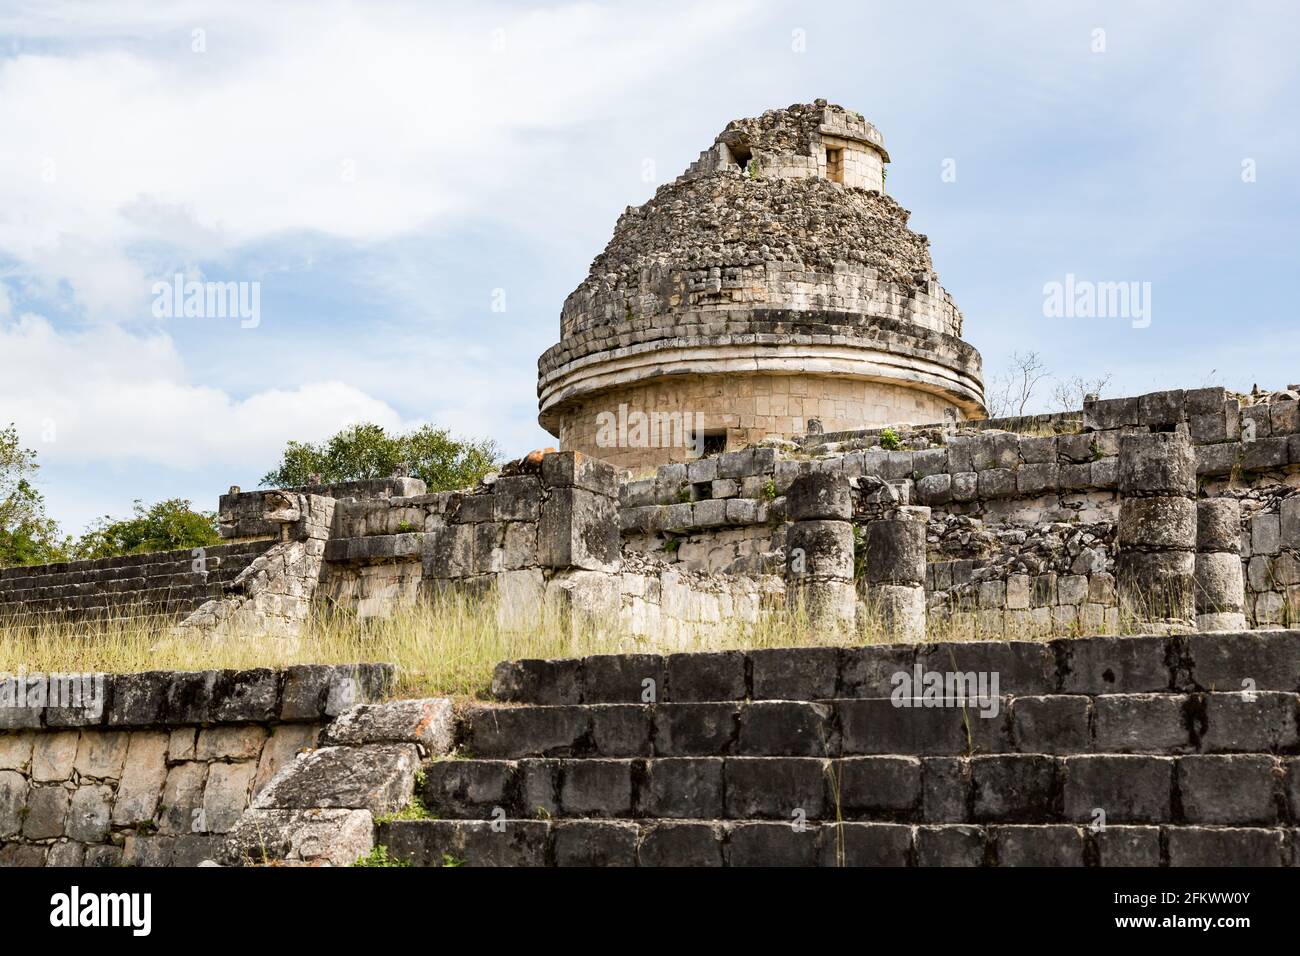 El Caracol, un ancien observatoire maya, Chichen-Itza, Yucatan. Mexique Banque D'Images